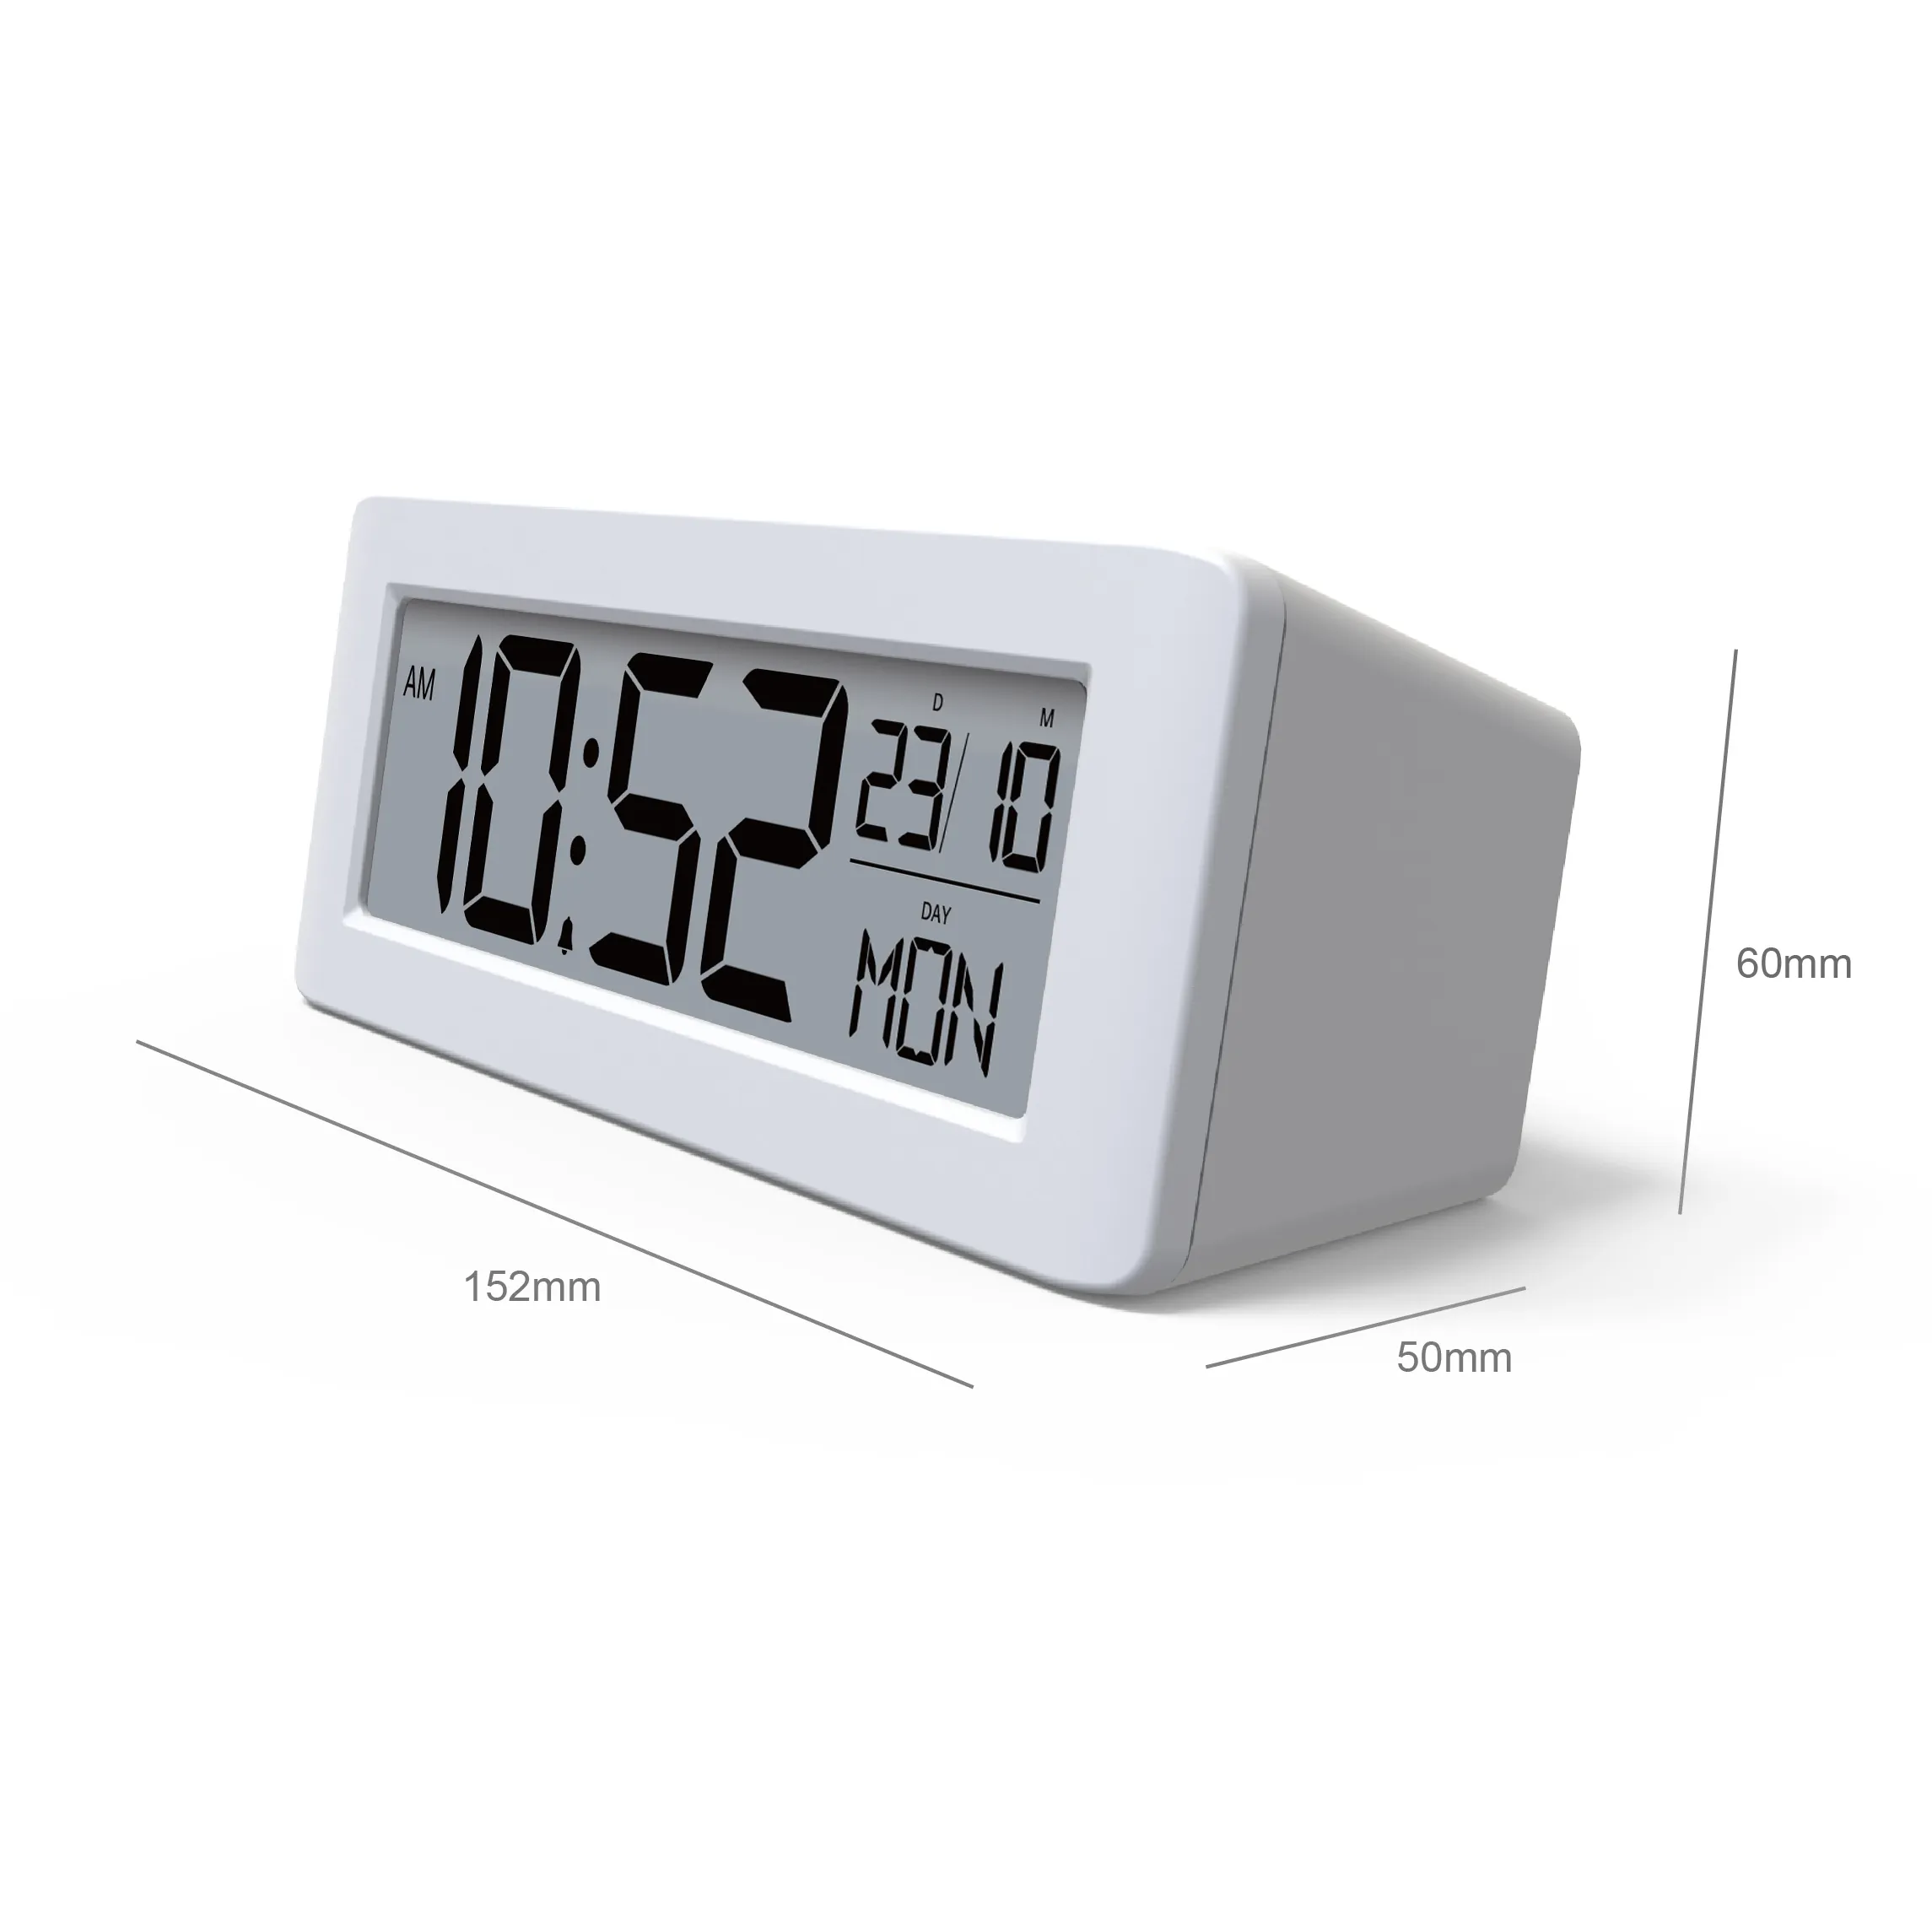 Basit tasarım yeni dijital masa masa alarmı saat CE sertifikası ile toptan İskandinav çalar saat